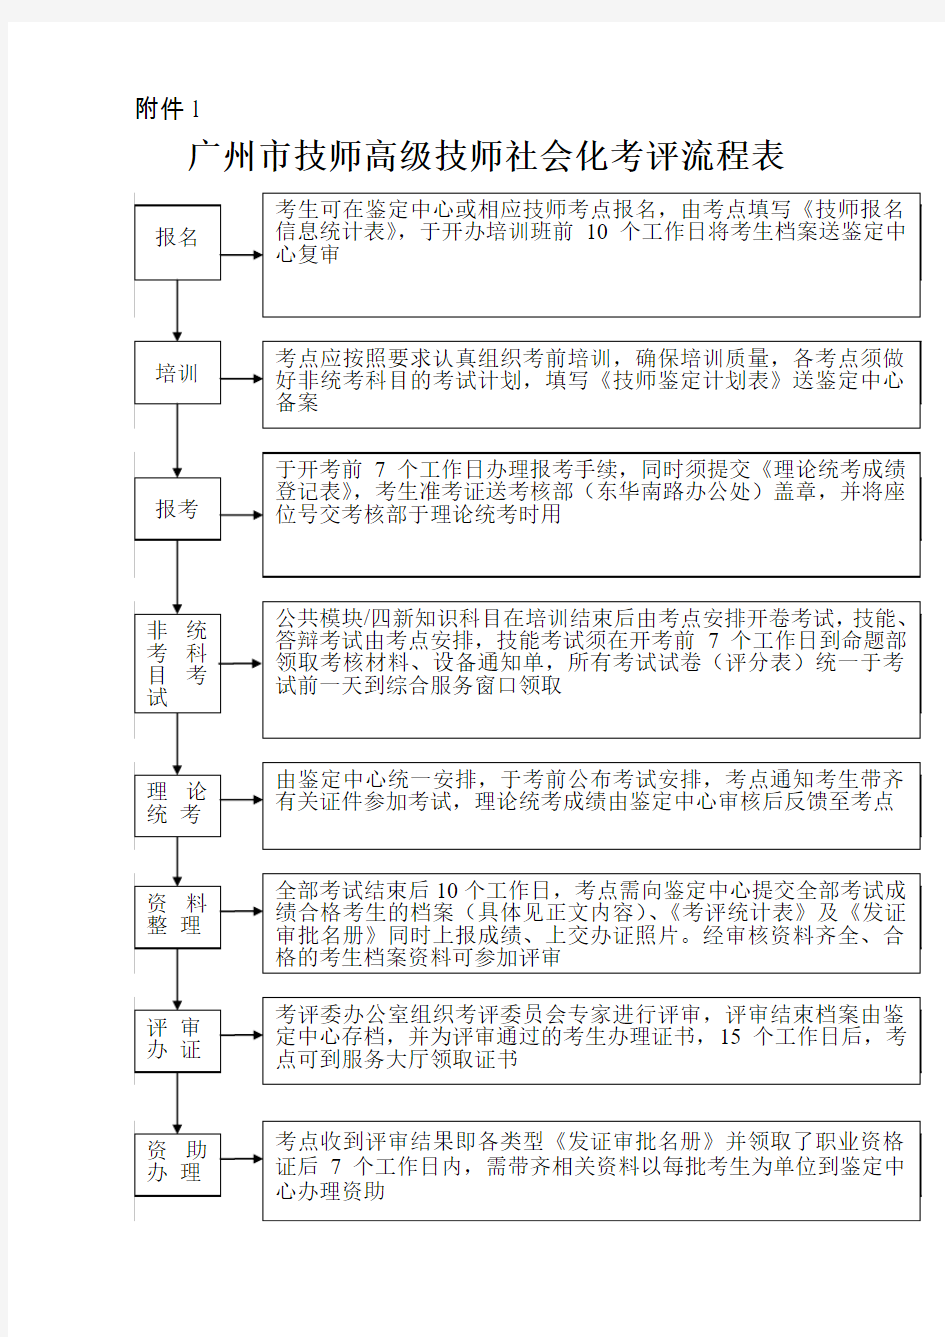 广州技师考评流程图-广州职业技能鉴定指导中心